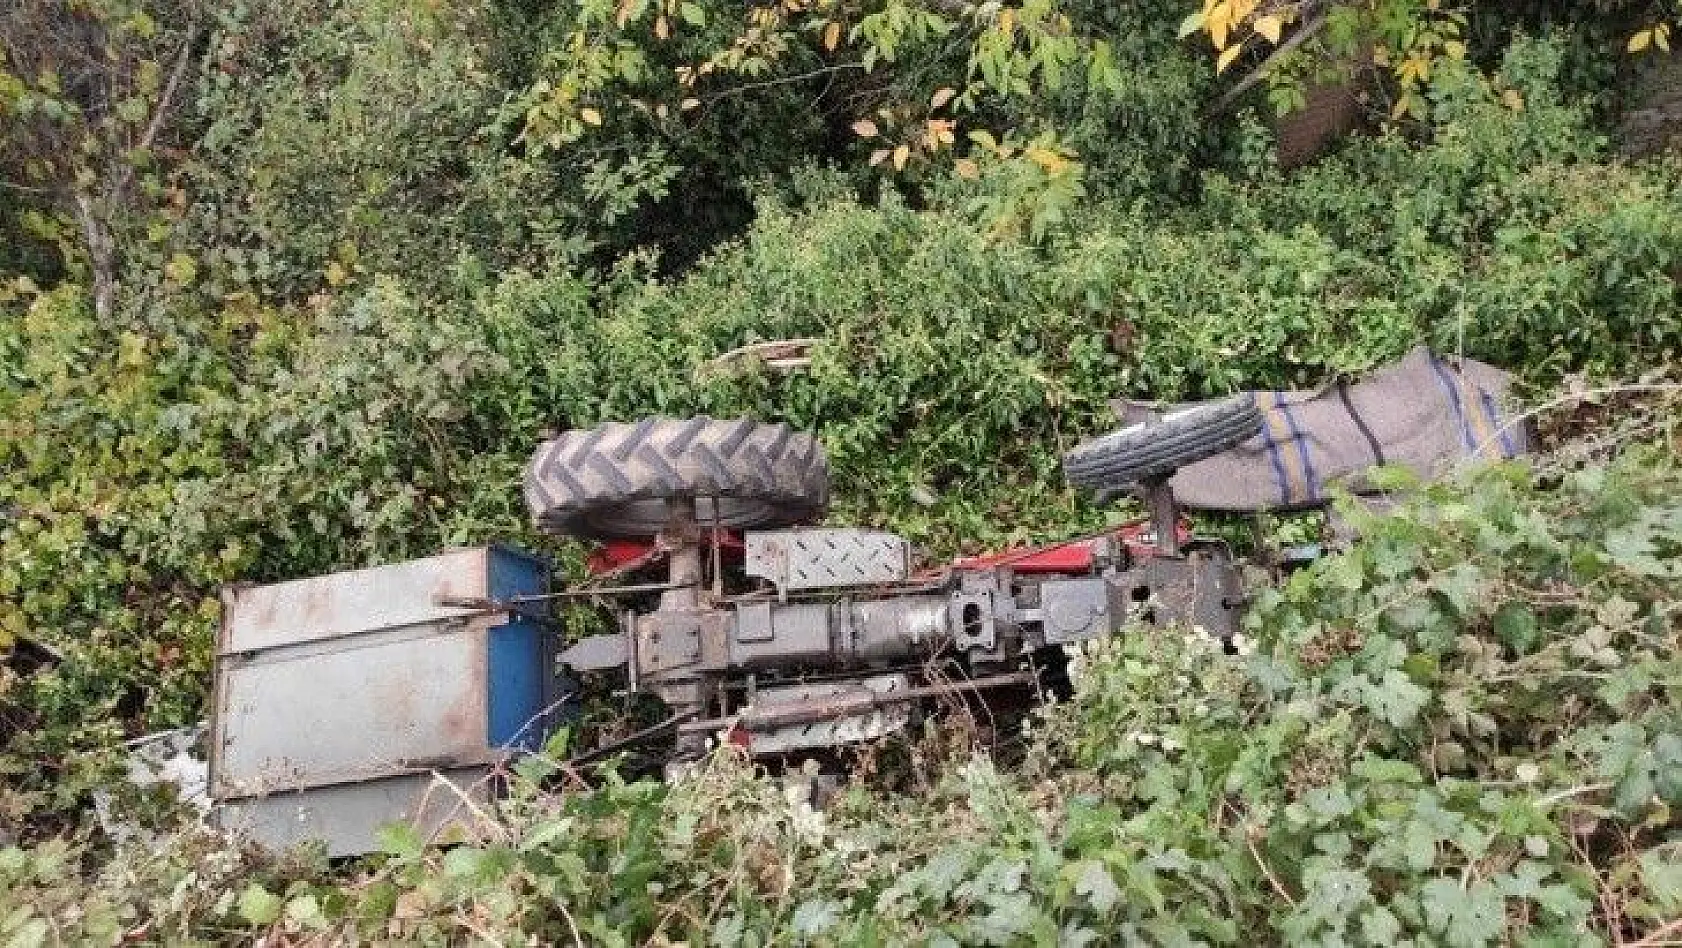 Manisa'da traktör takla attı: 1 ölü, 1 yaralı